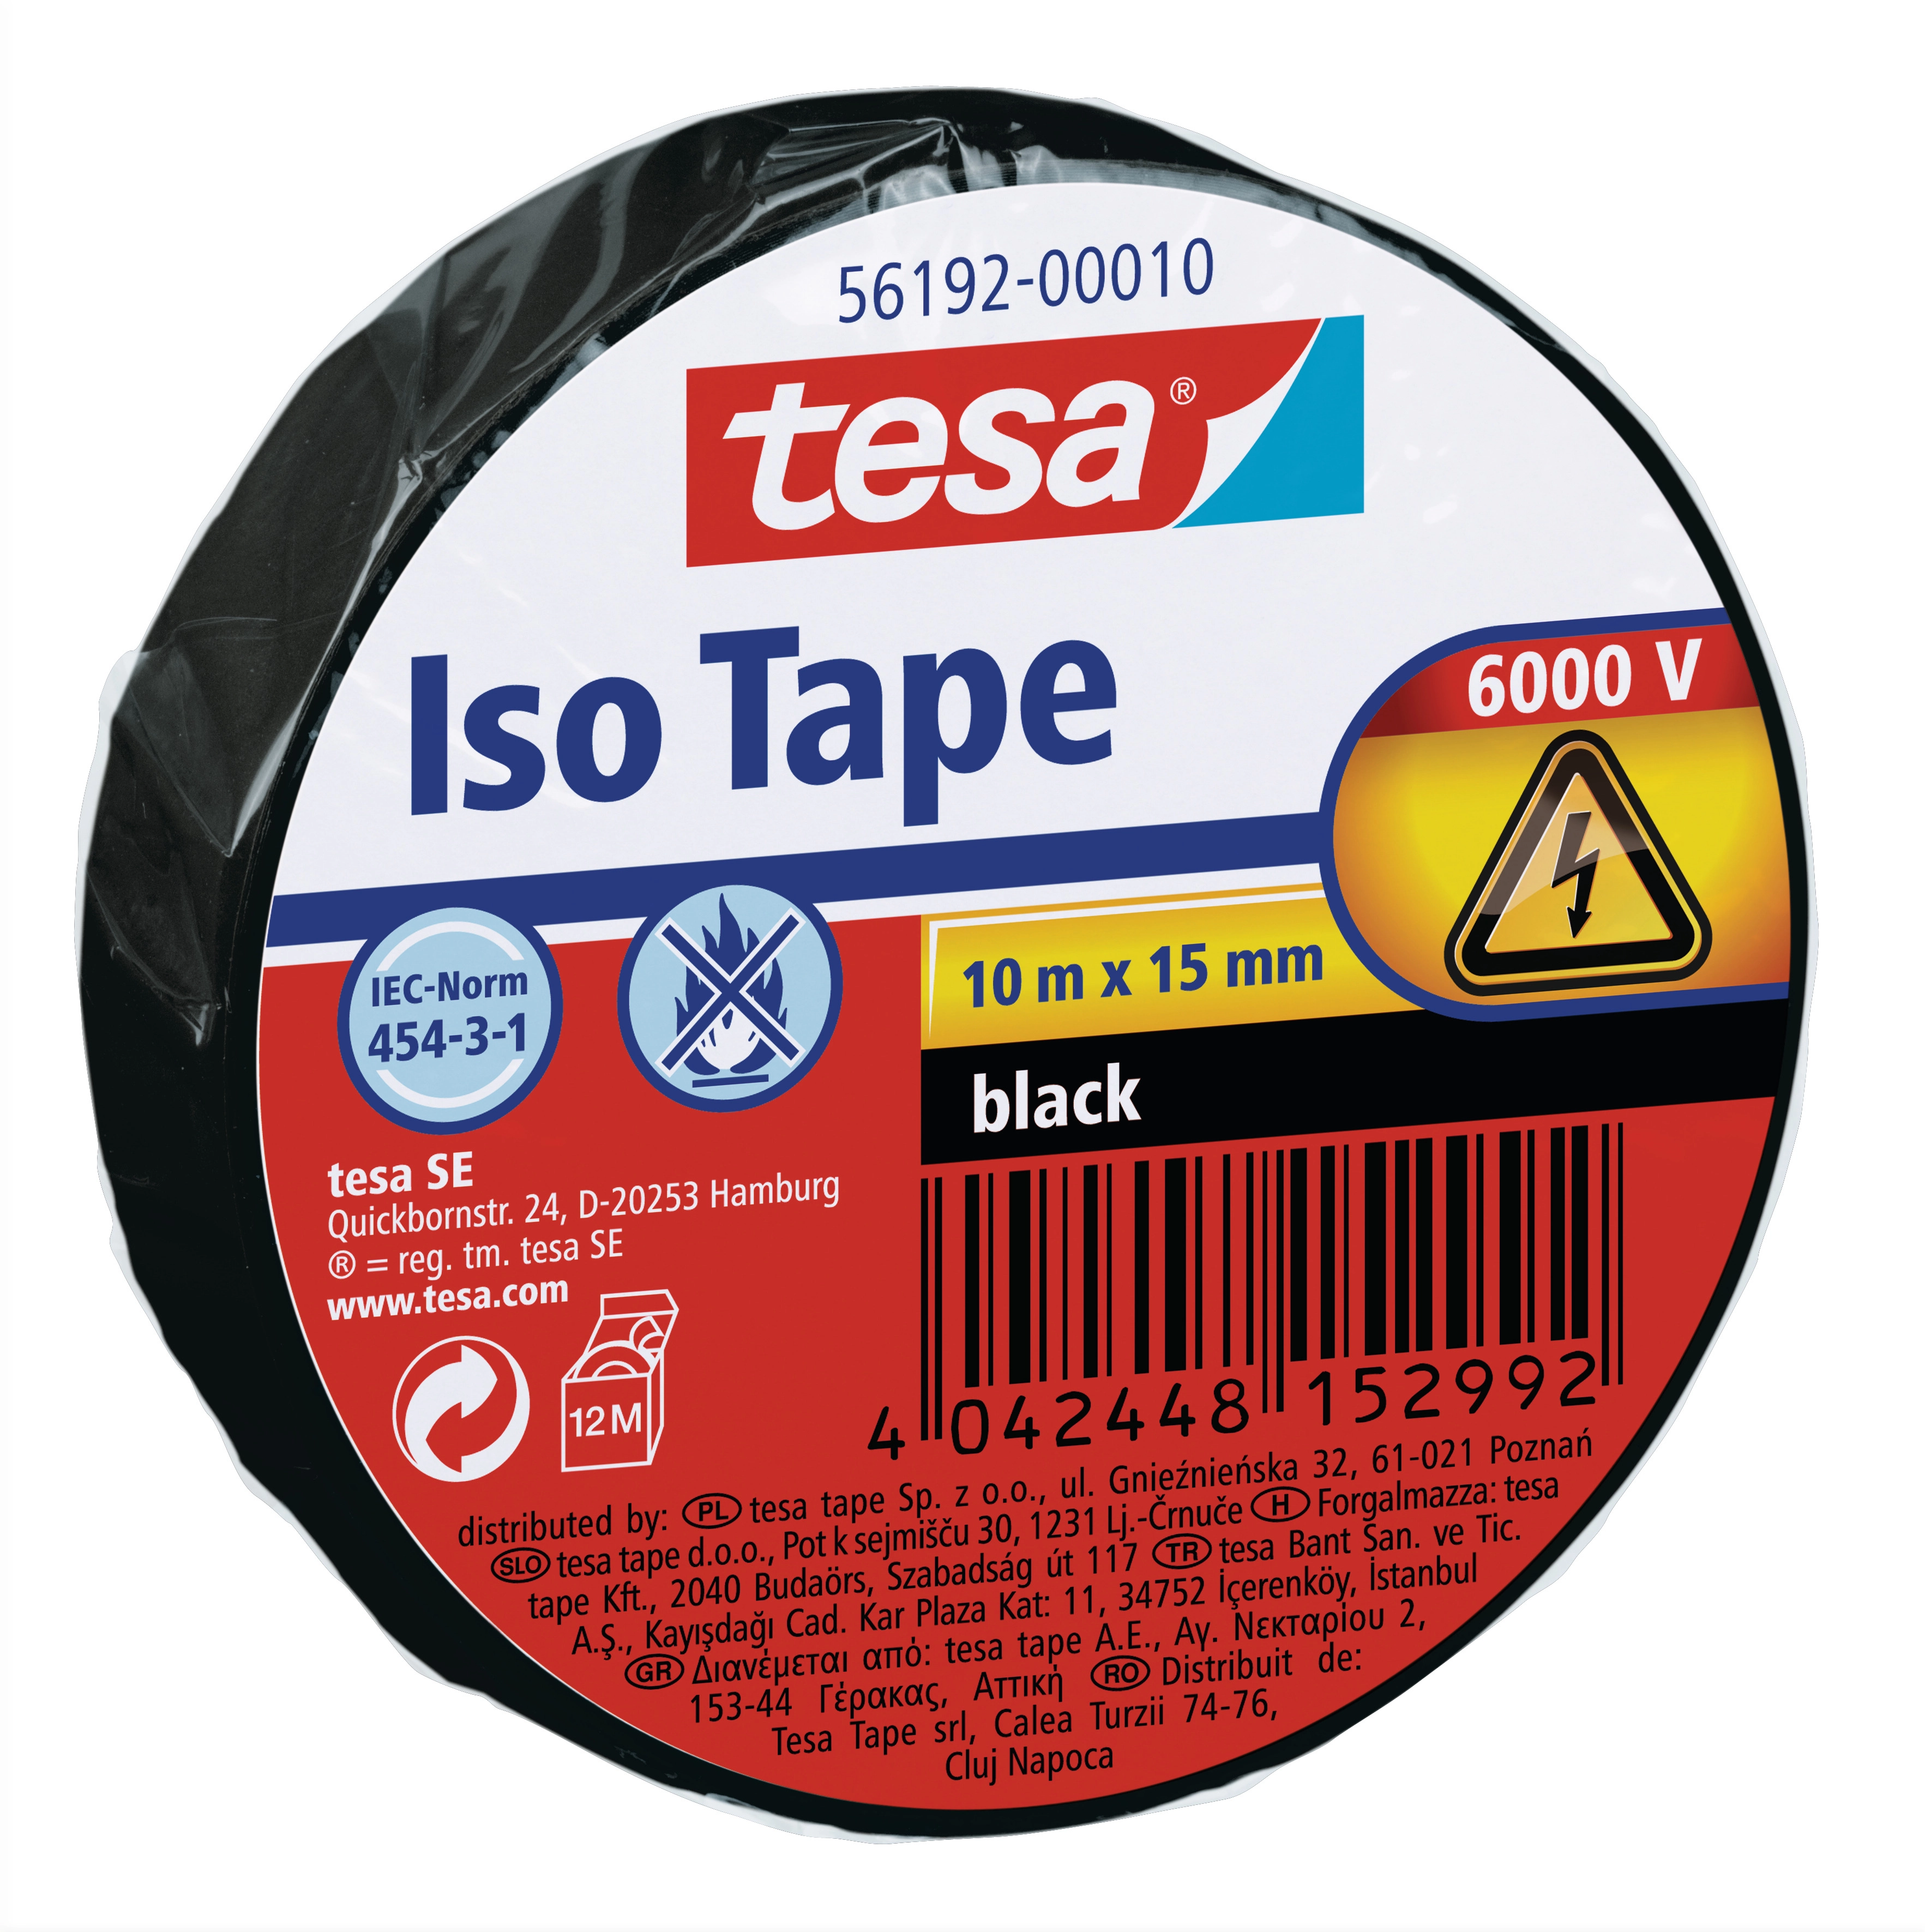 Tesa Iso Tape Schwarz 10 m x 15 mm kaufen bei OBI